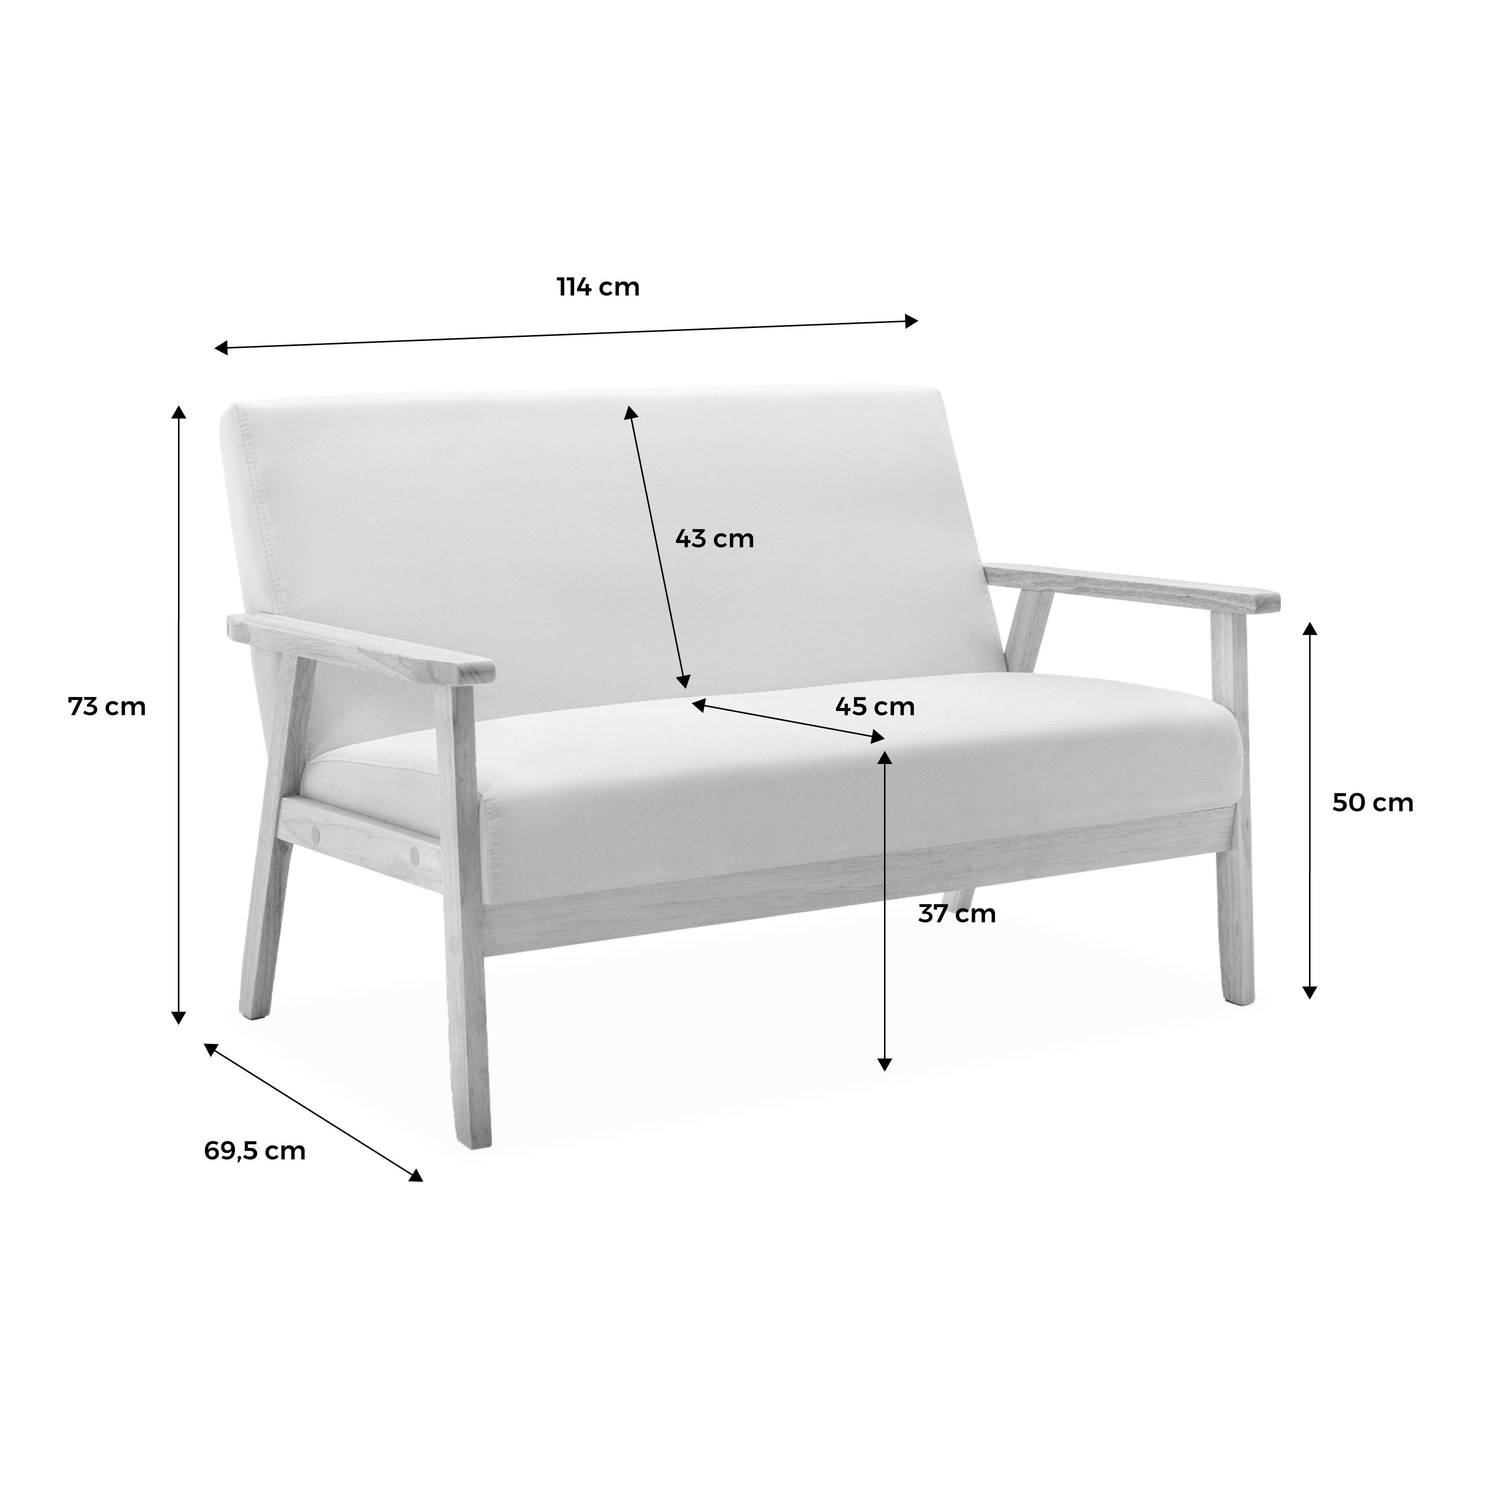 Banquette et fauteuil en bois et tissu gris clair, Isak, L 114 x l 69,5 x H 73cm Photo9